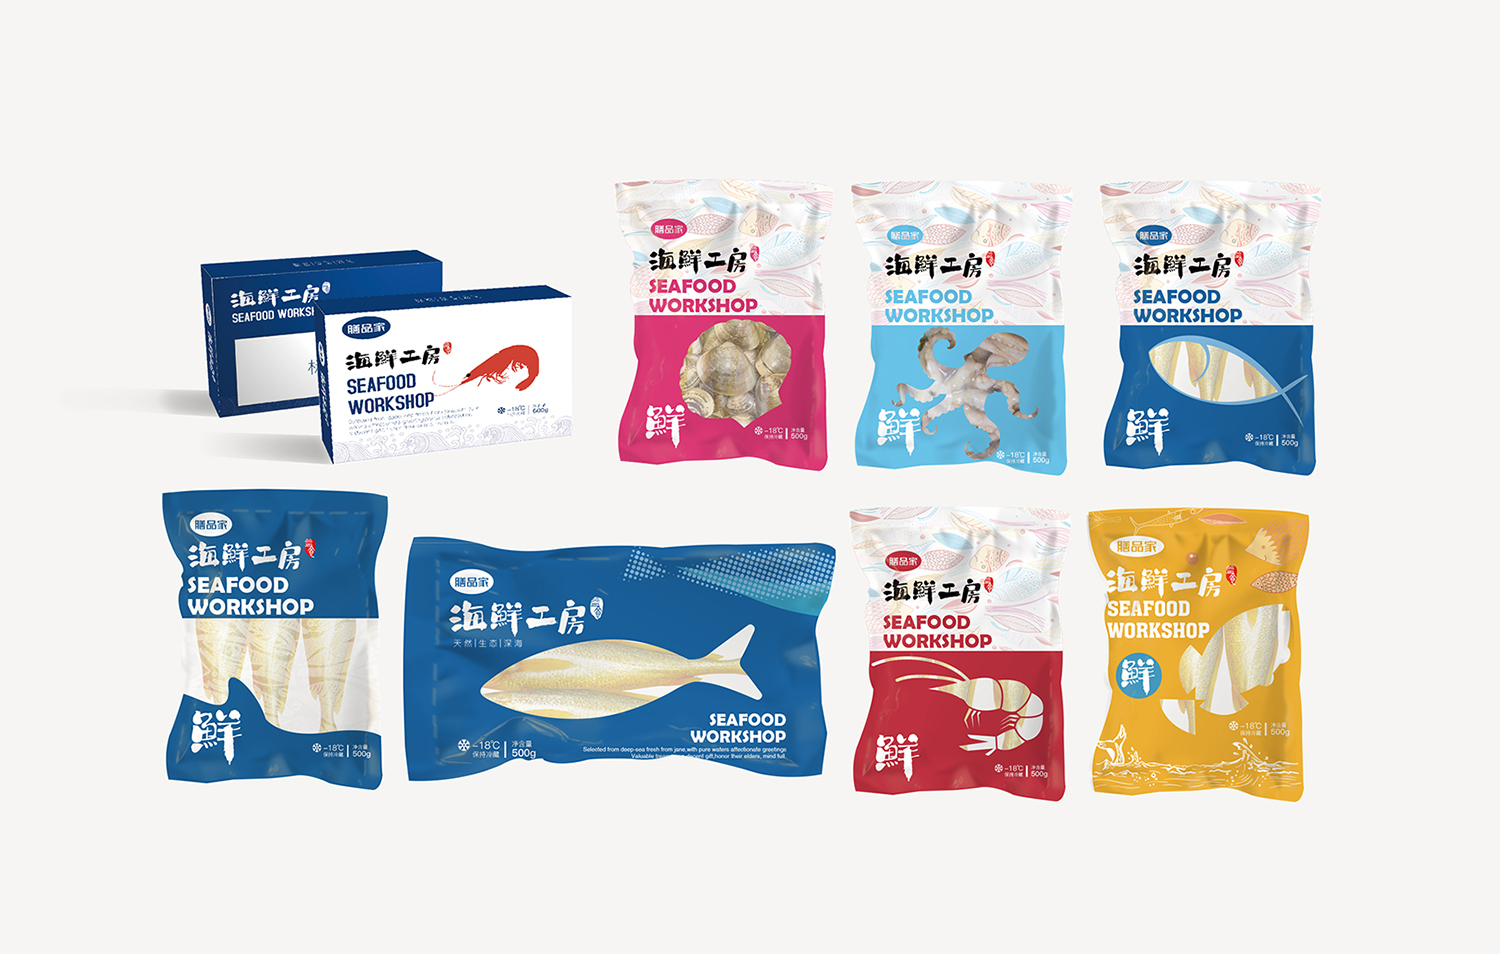 海鲜水产品包装设计案例分享:膳品家海鲜工房海产品系列包装设计